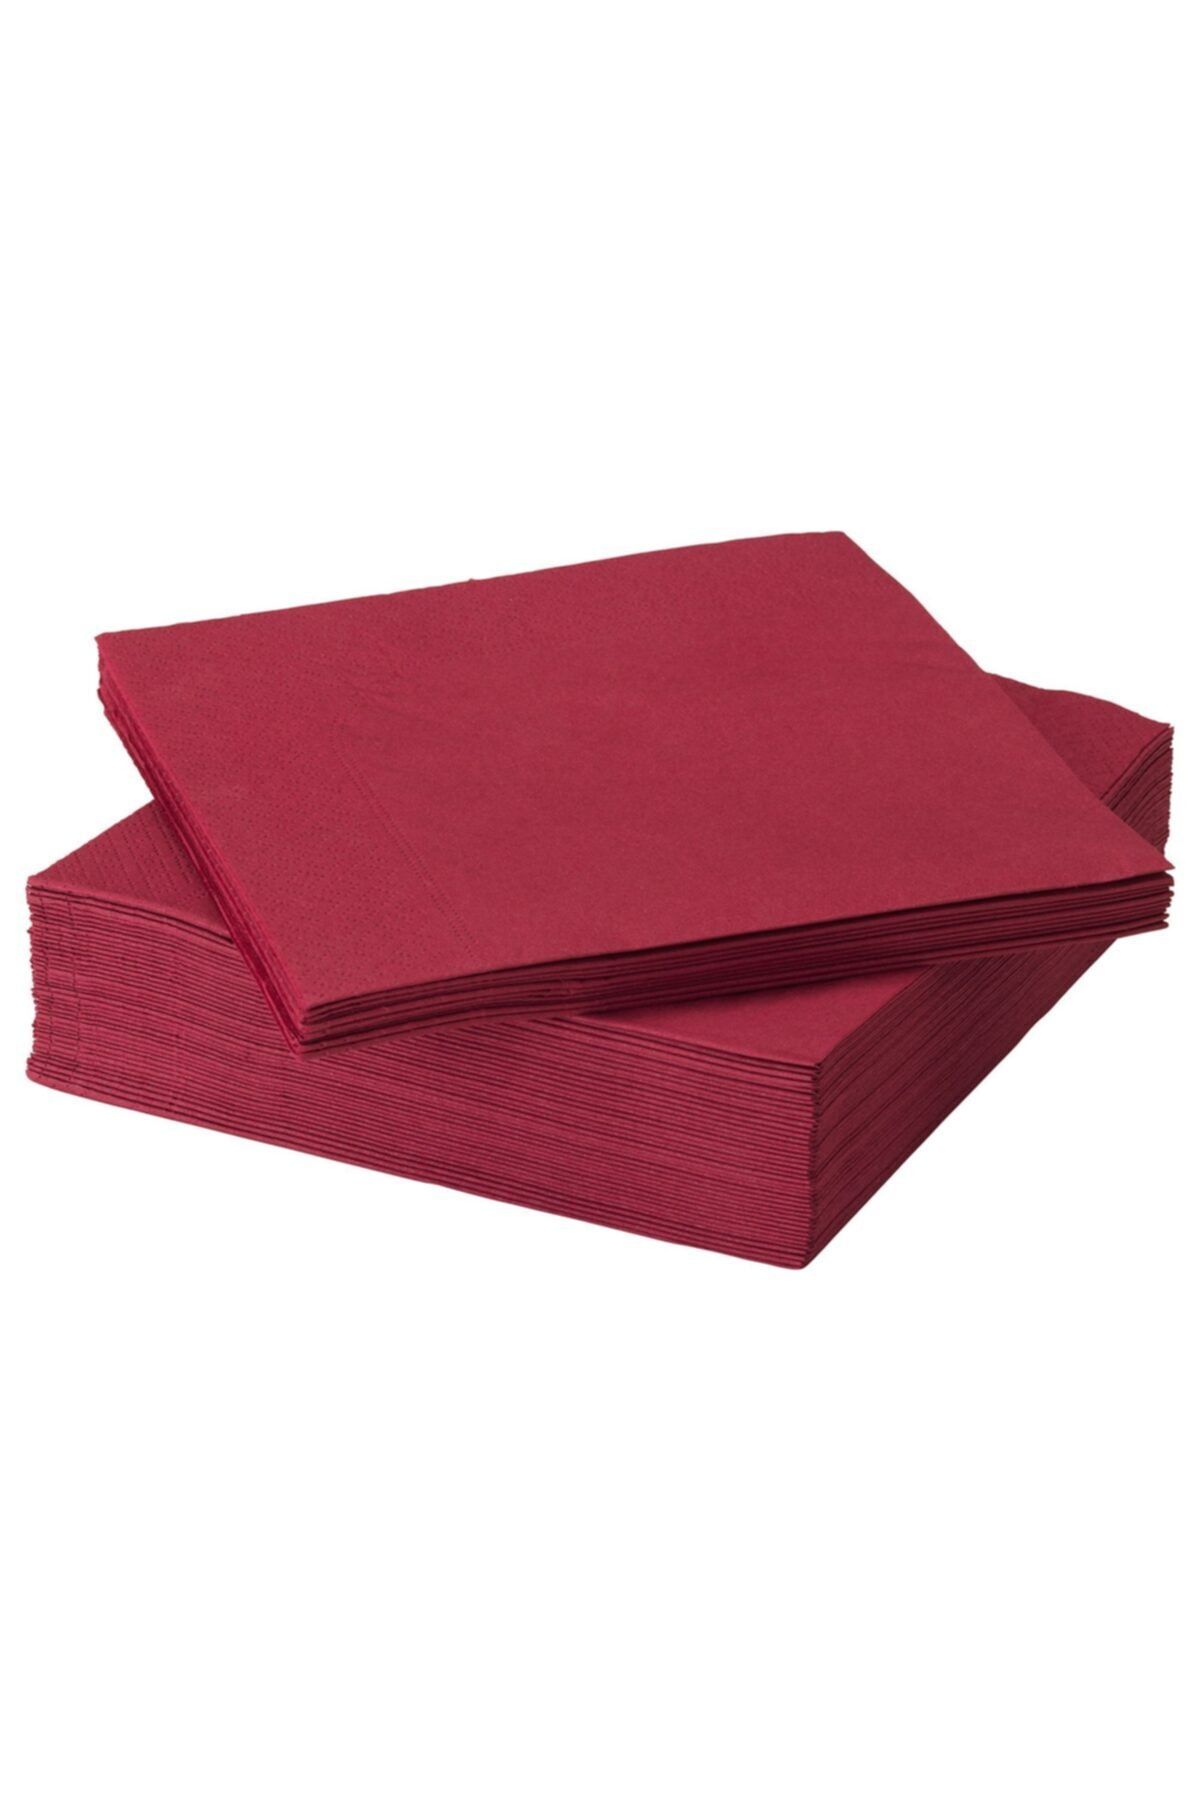 FANTASTISK Paper napkin, dark red - IKEA